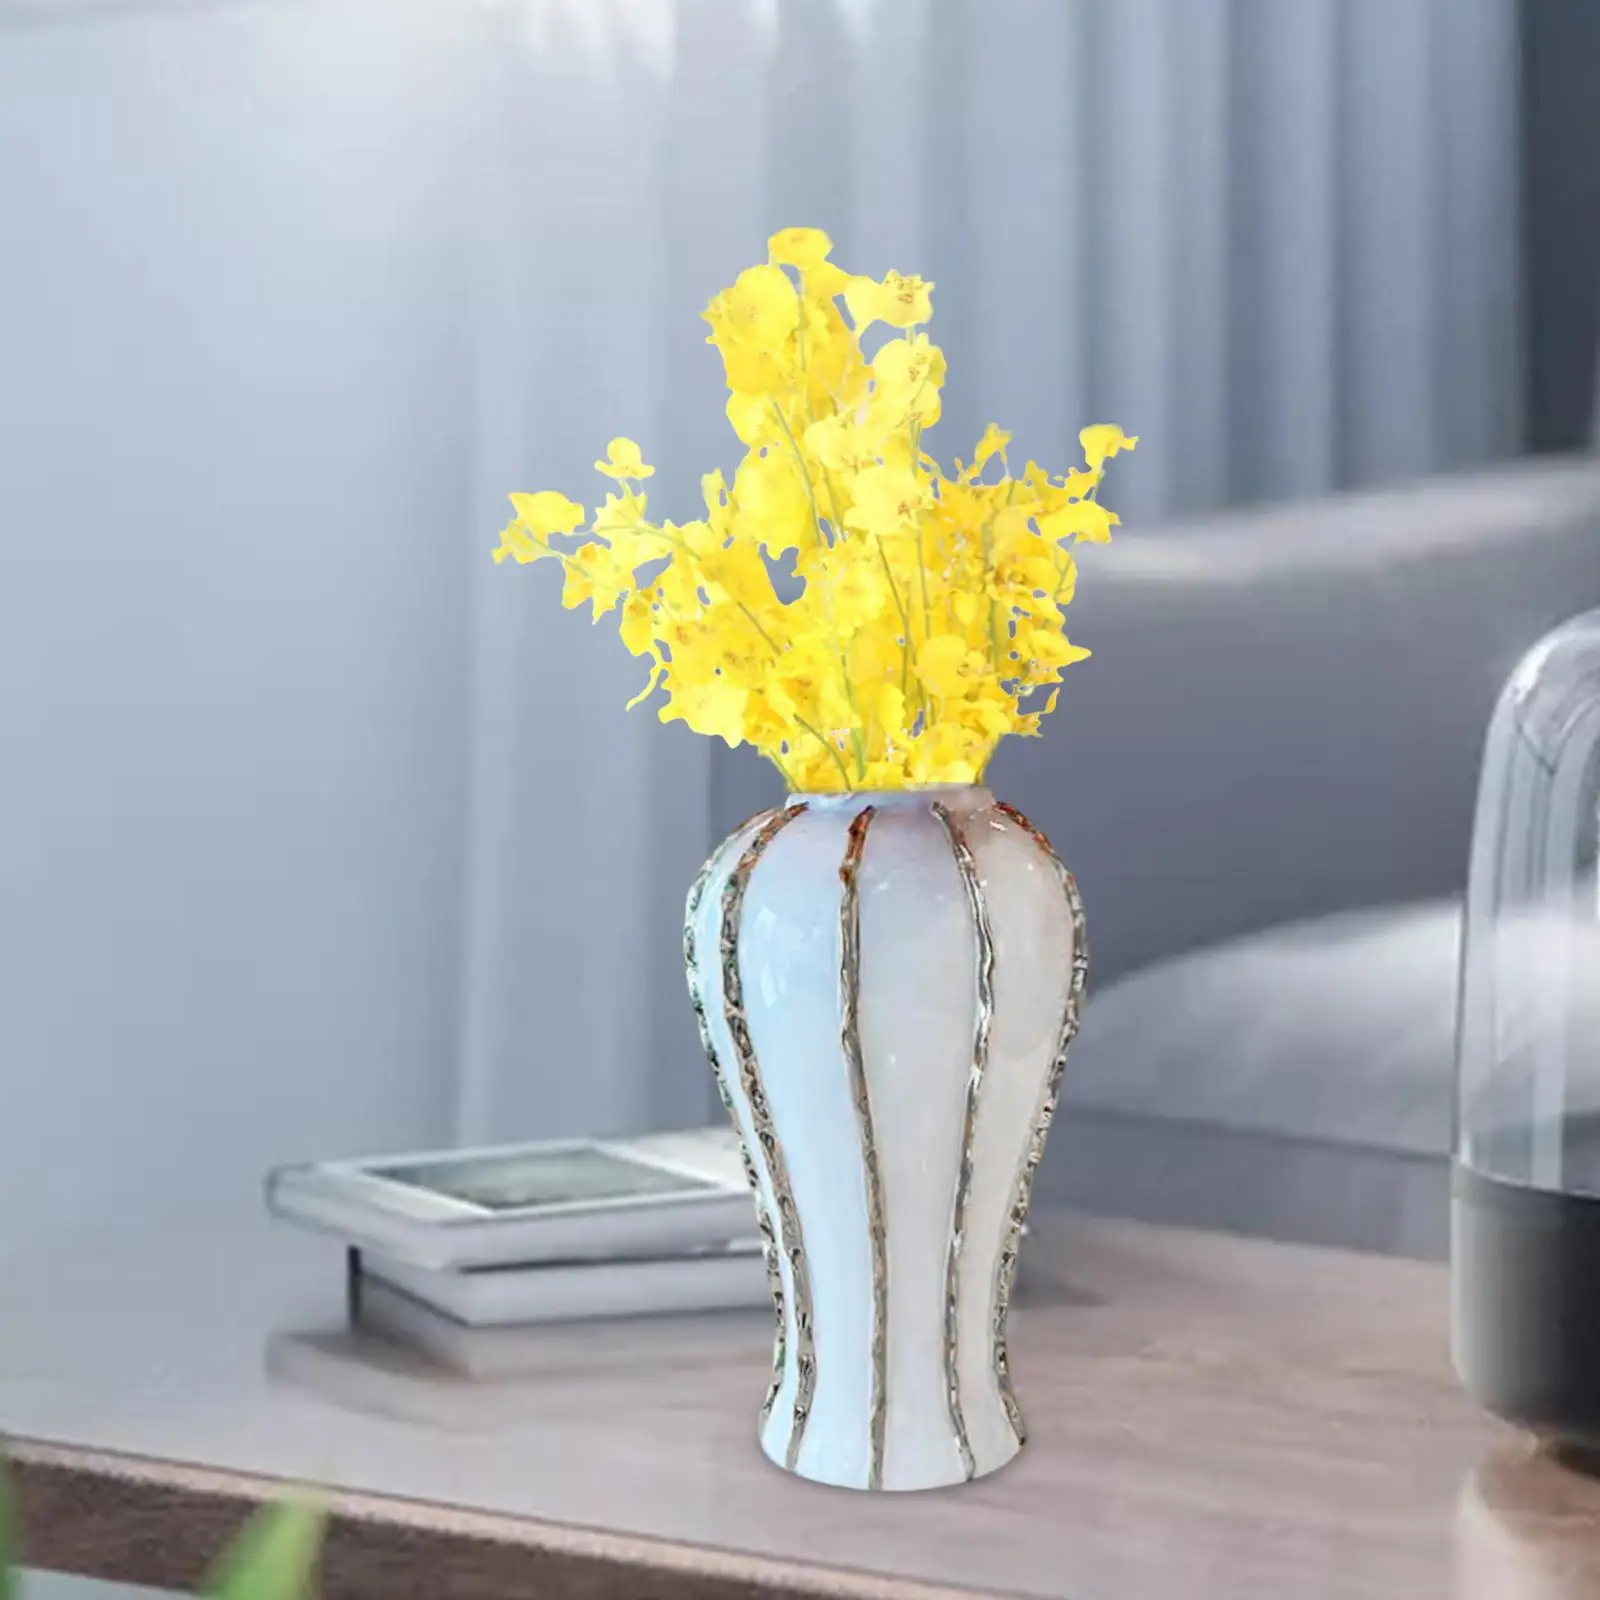 Temple Jar Flower Pot Collection Display Ceramic Flower Vase Porcelain Ginger Jar Storage Organizer for Office Birthday Bedroom